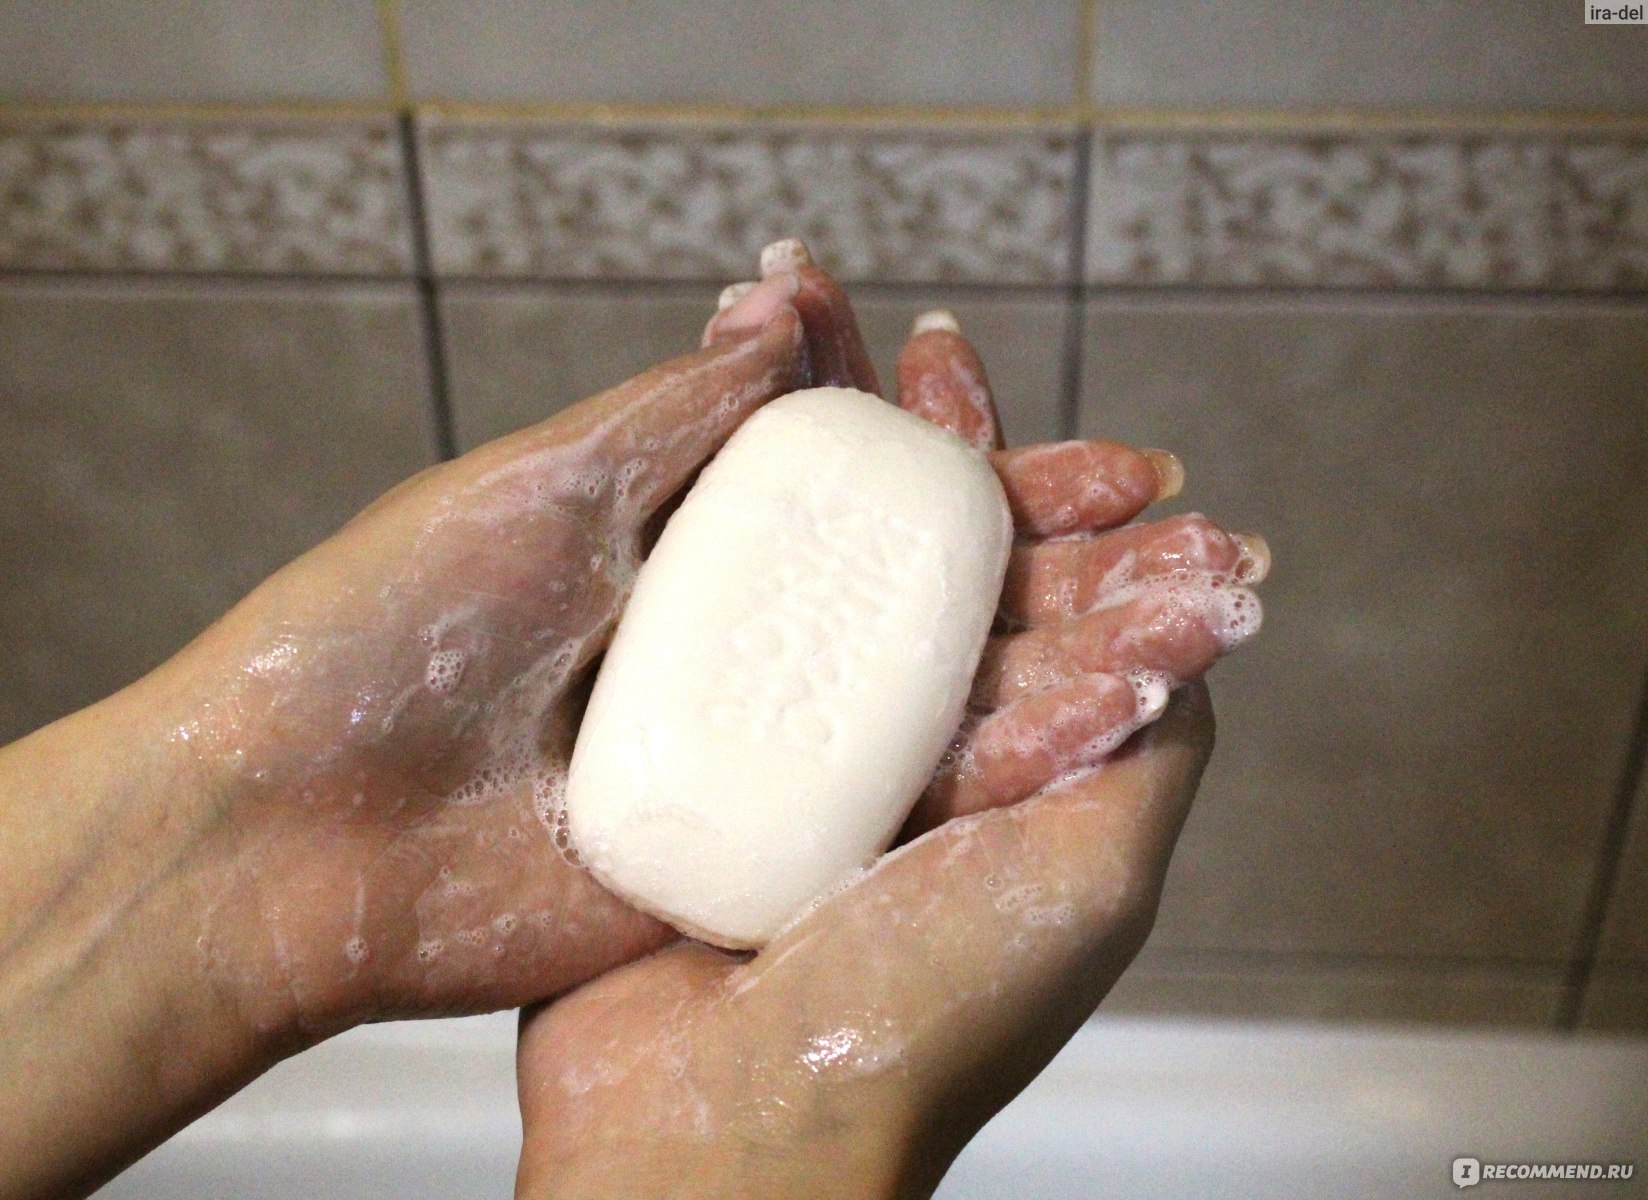 Каким мылом подмываться. Каким мылом лучше подмываться. Подмываться детским мылом. Мыло с которым подмываются. Надо ли подмываться мылом?.